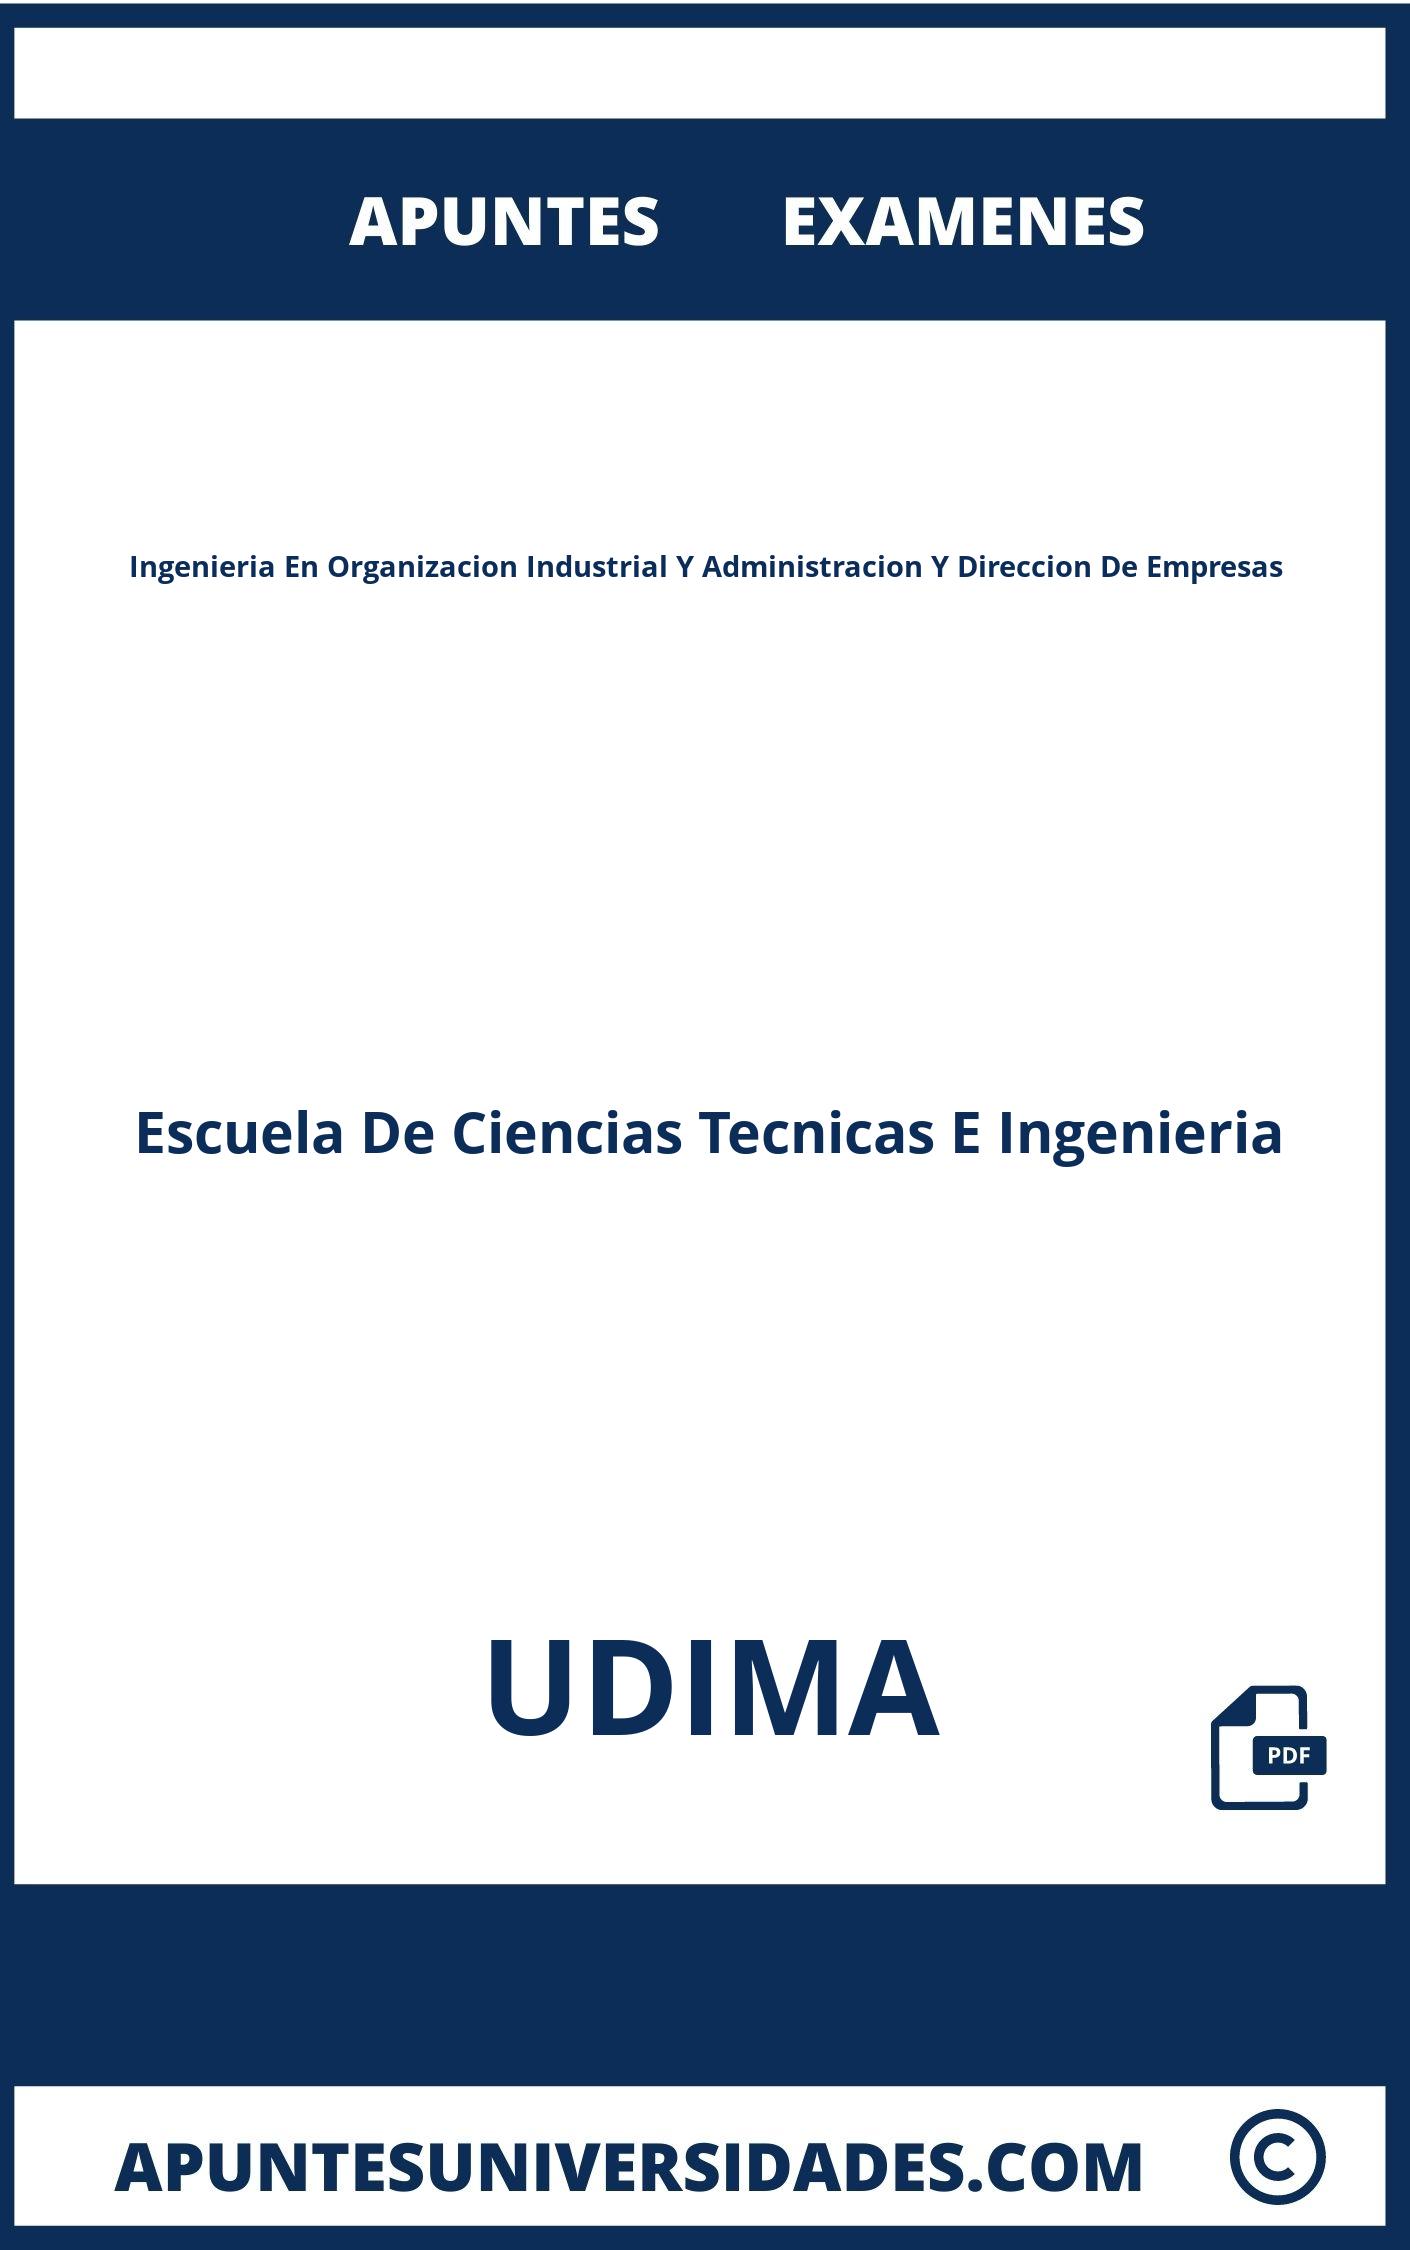 Examenes y Apuntes Ingenieria En Organizacion Industrial Y Administracion Y Direccion De Empresas UDIMA